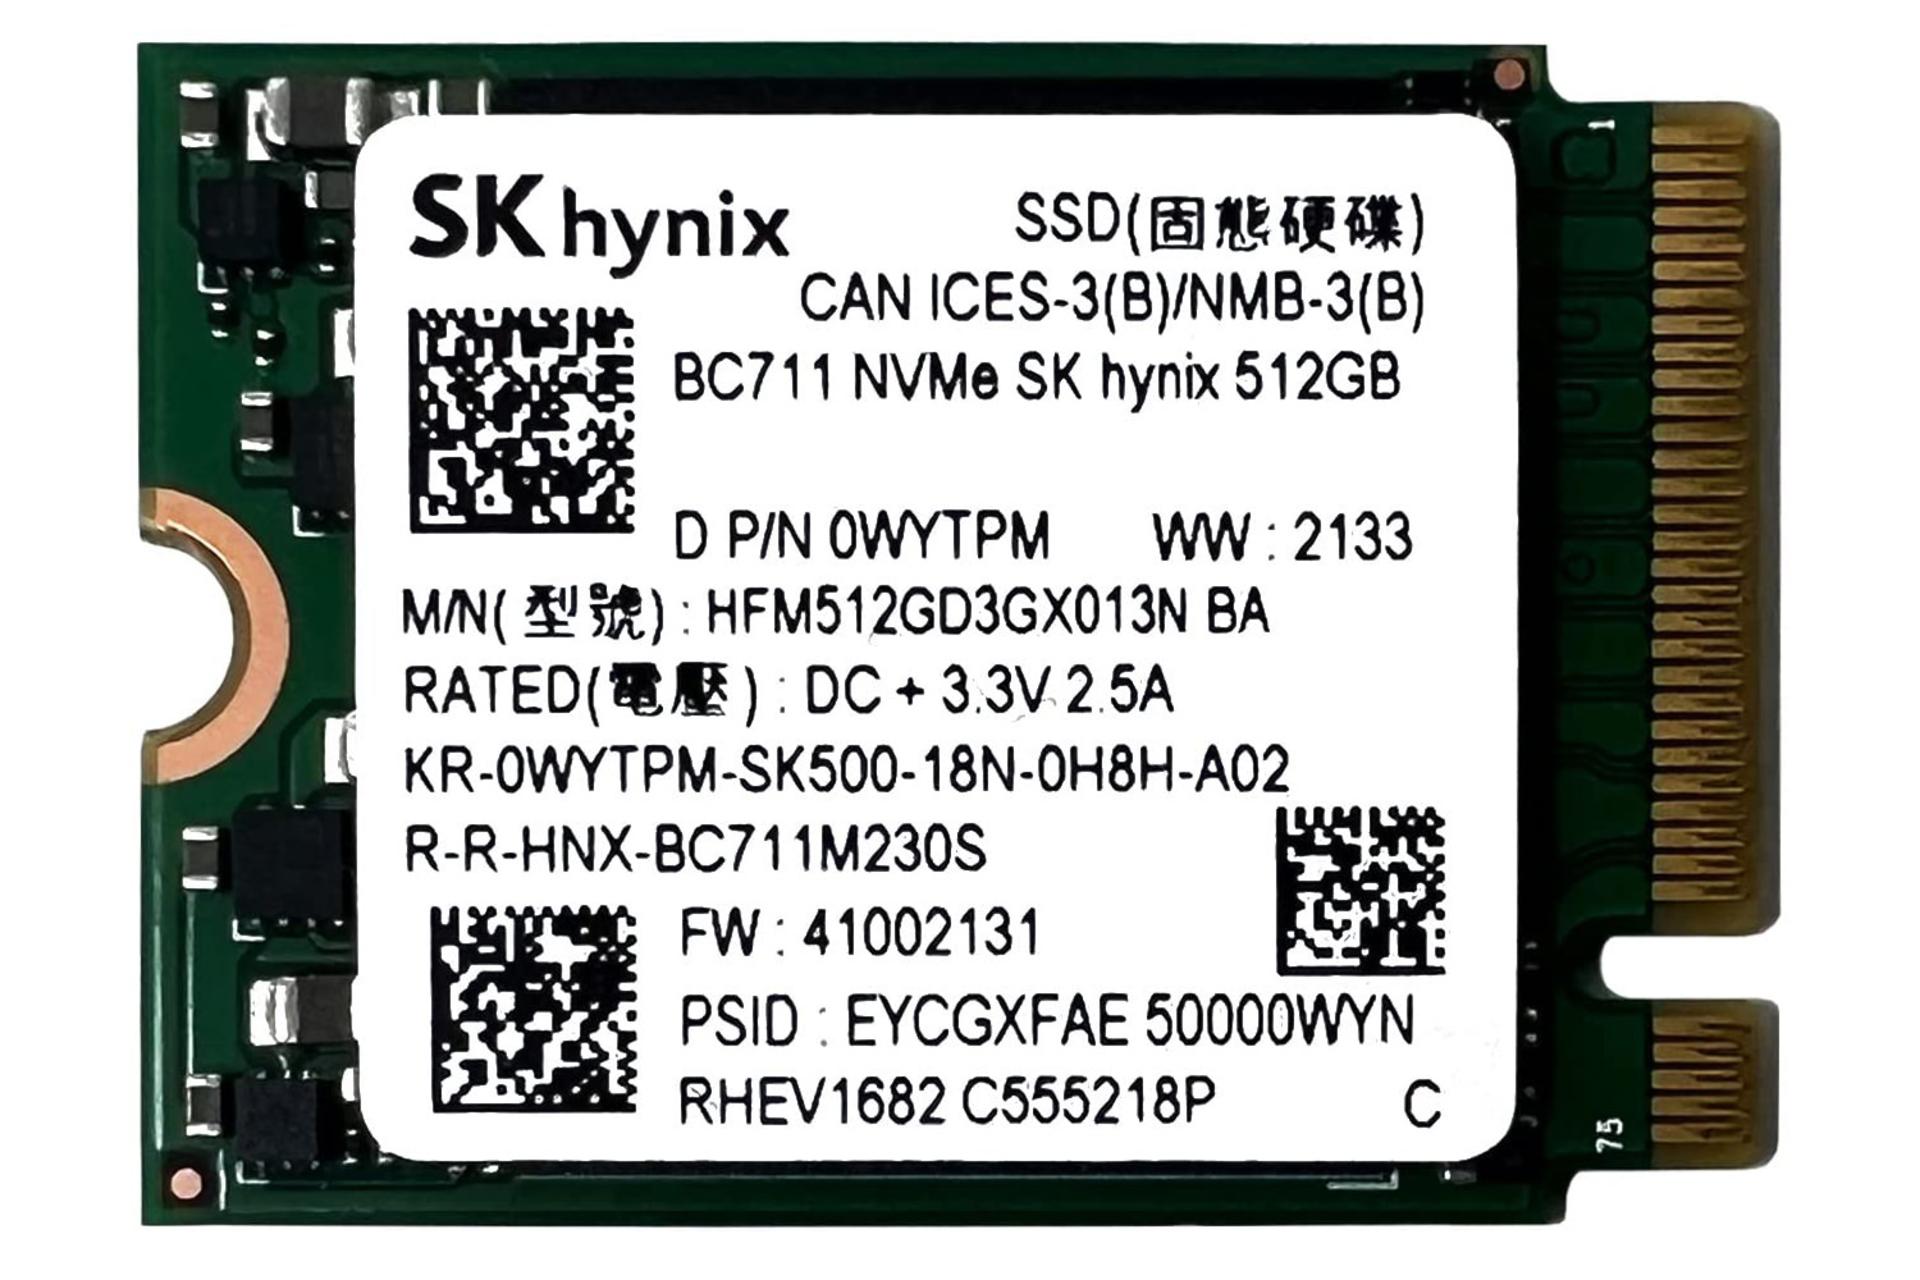 SSD اس کی هاینیکس BC711 NVMe M.2 2230